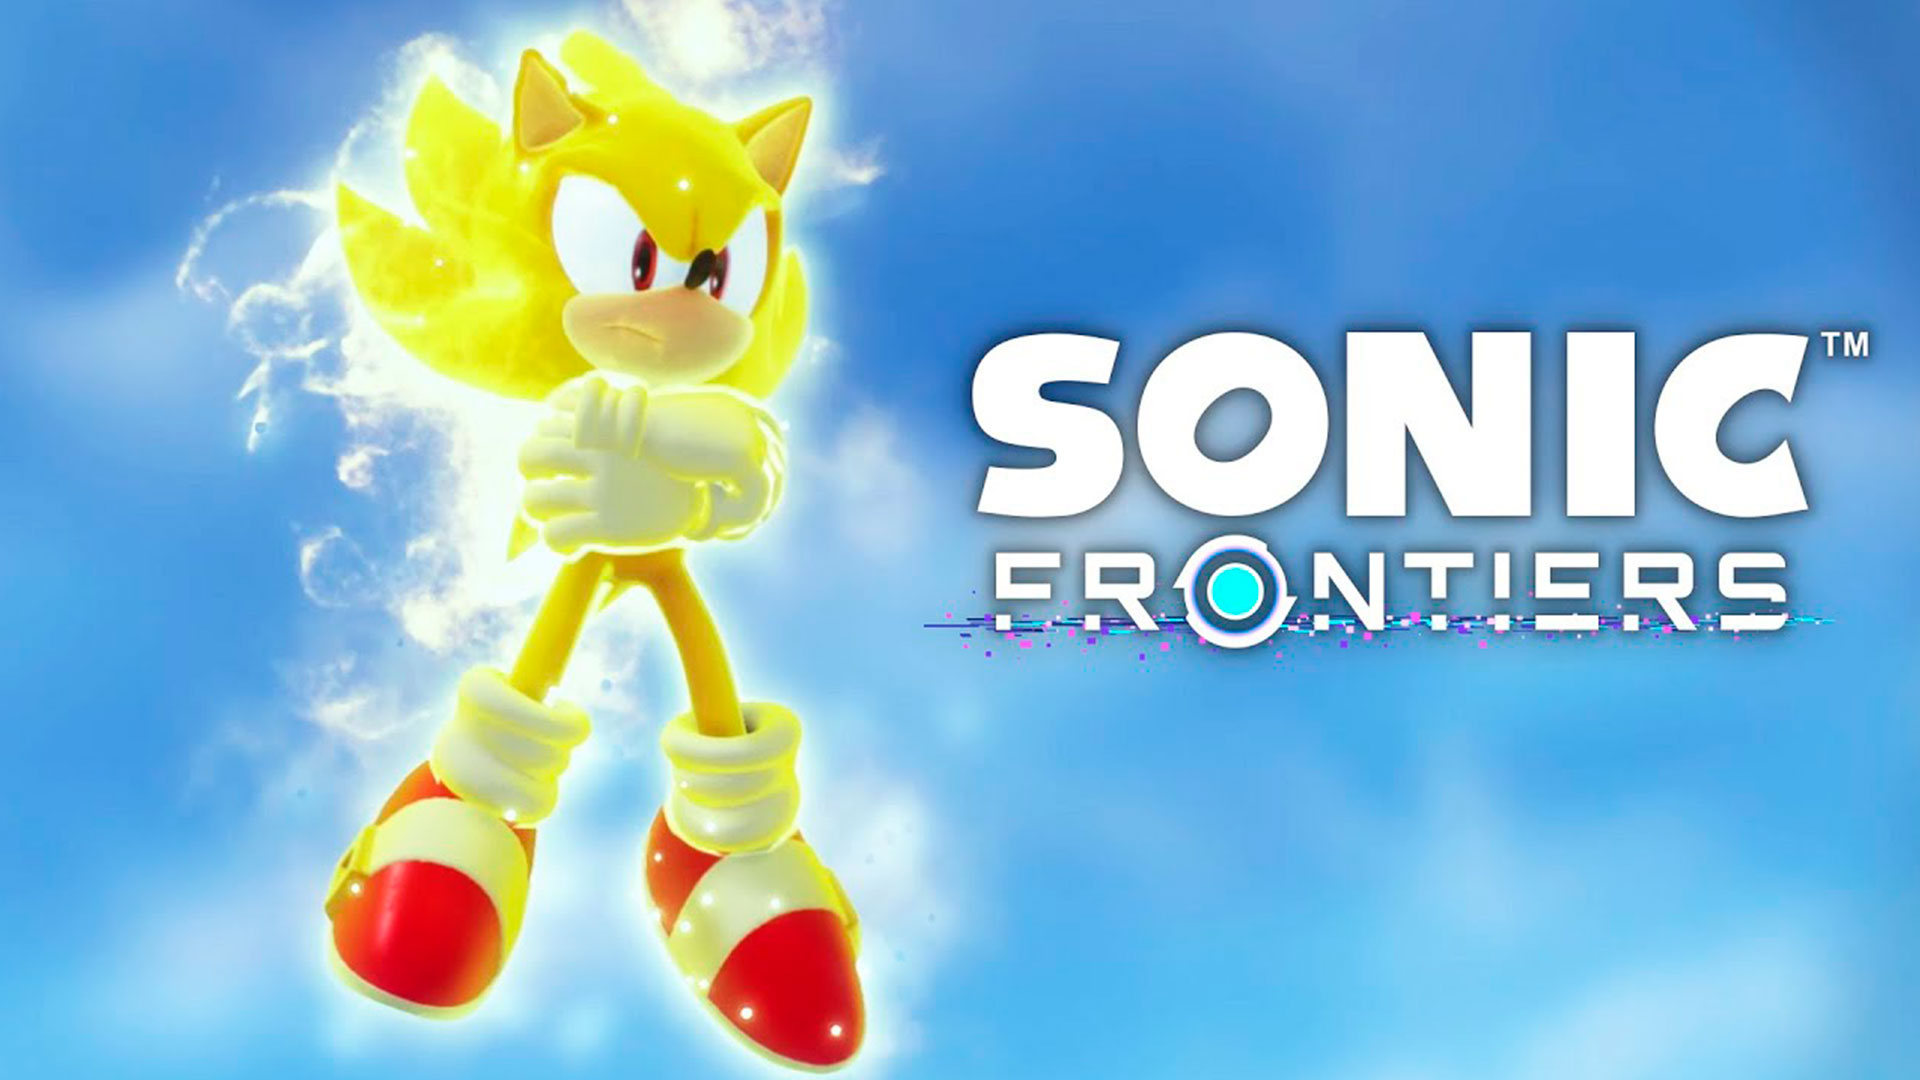 Sonic Forces™, Jogos para a Nintendo Switch, Jogos